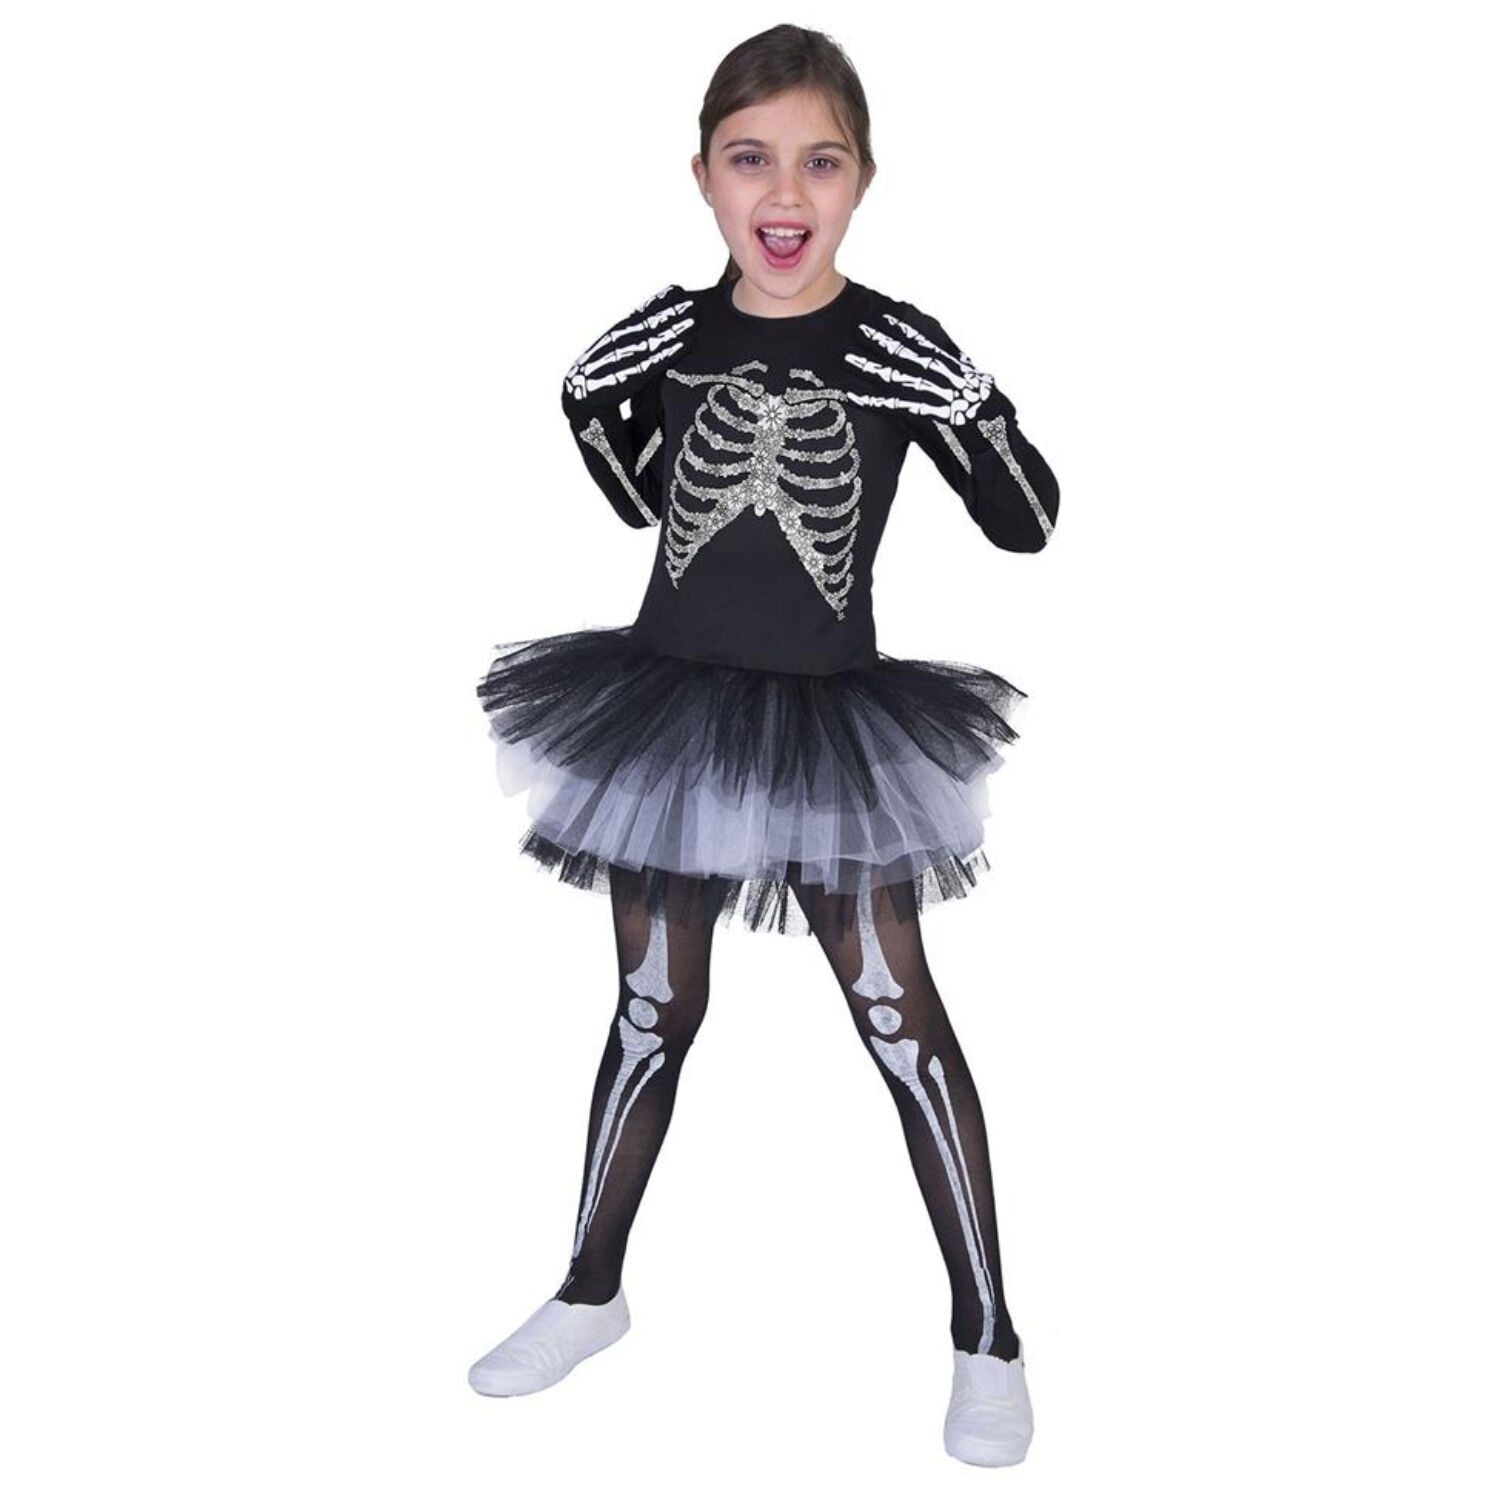 NEU Kinder-Kostüm Skelett-Kleid Suzy, mit Knochenaufdruck und Tüllrock, Gr. 128